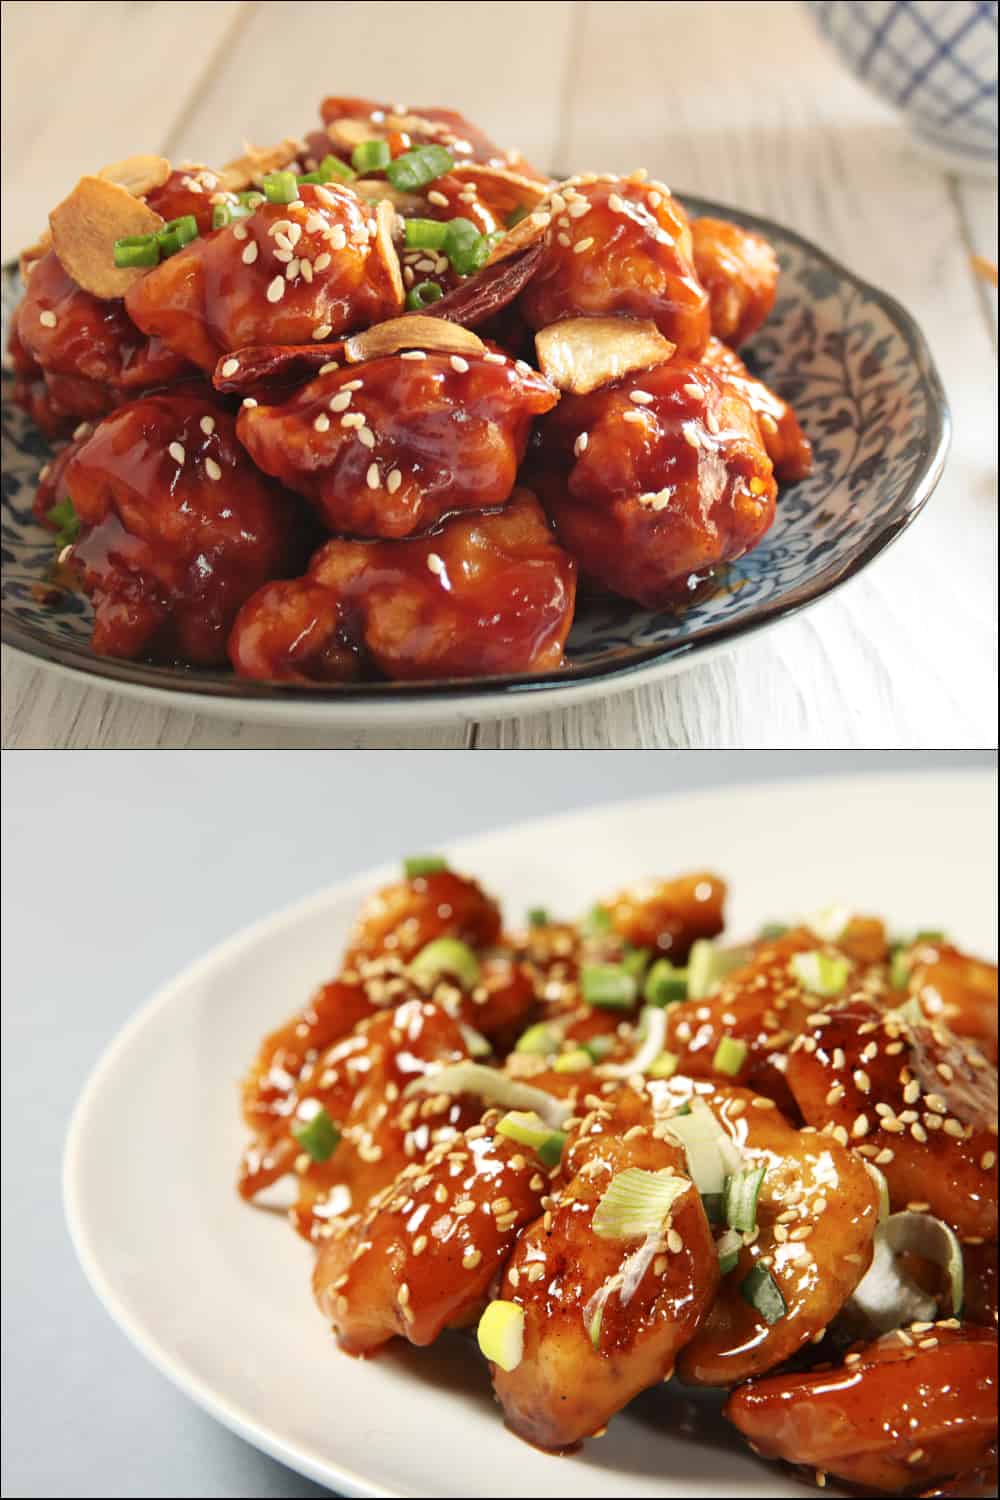 general tso vs sesame chicken on plate